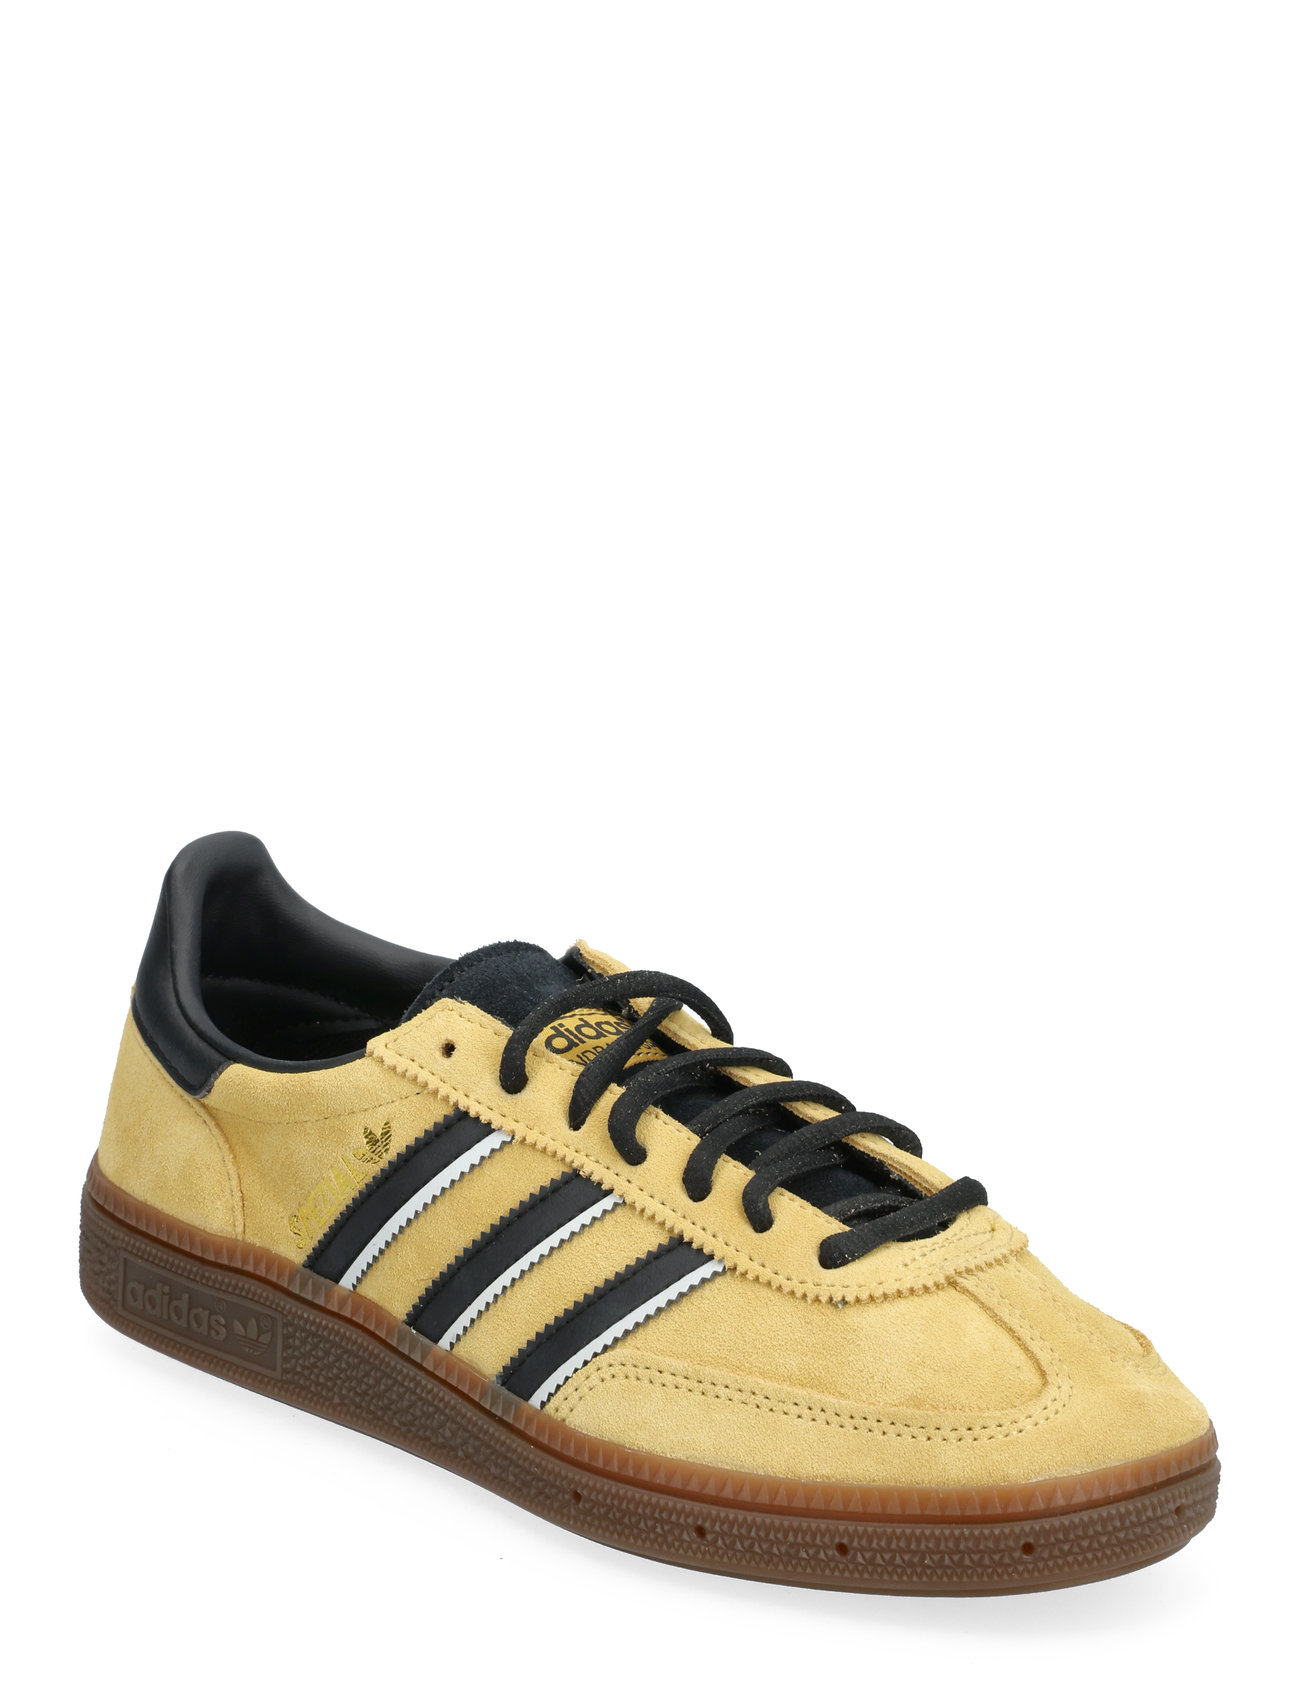 Handball Spezial Sport Sneakers Low-top Sneakers Yellow Adidas Originals